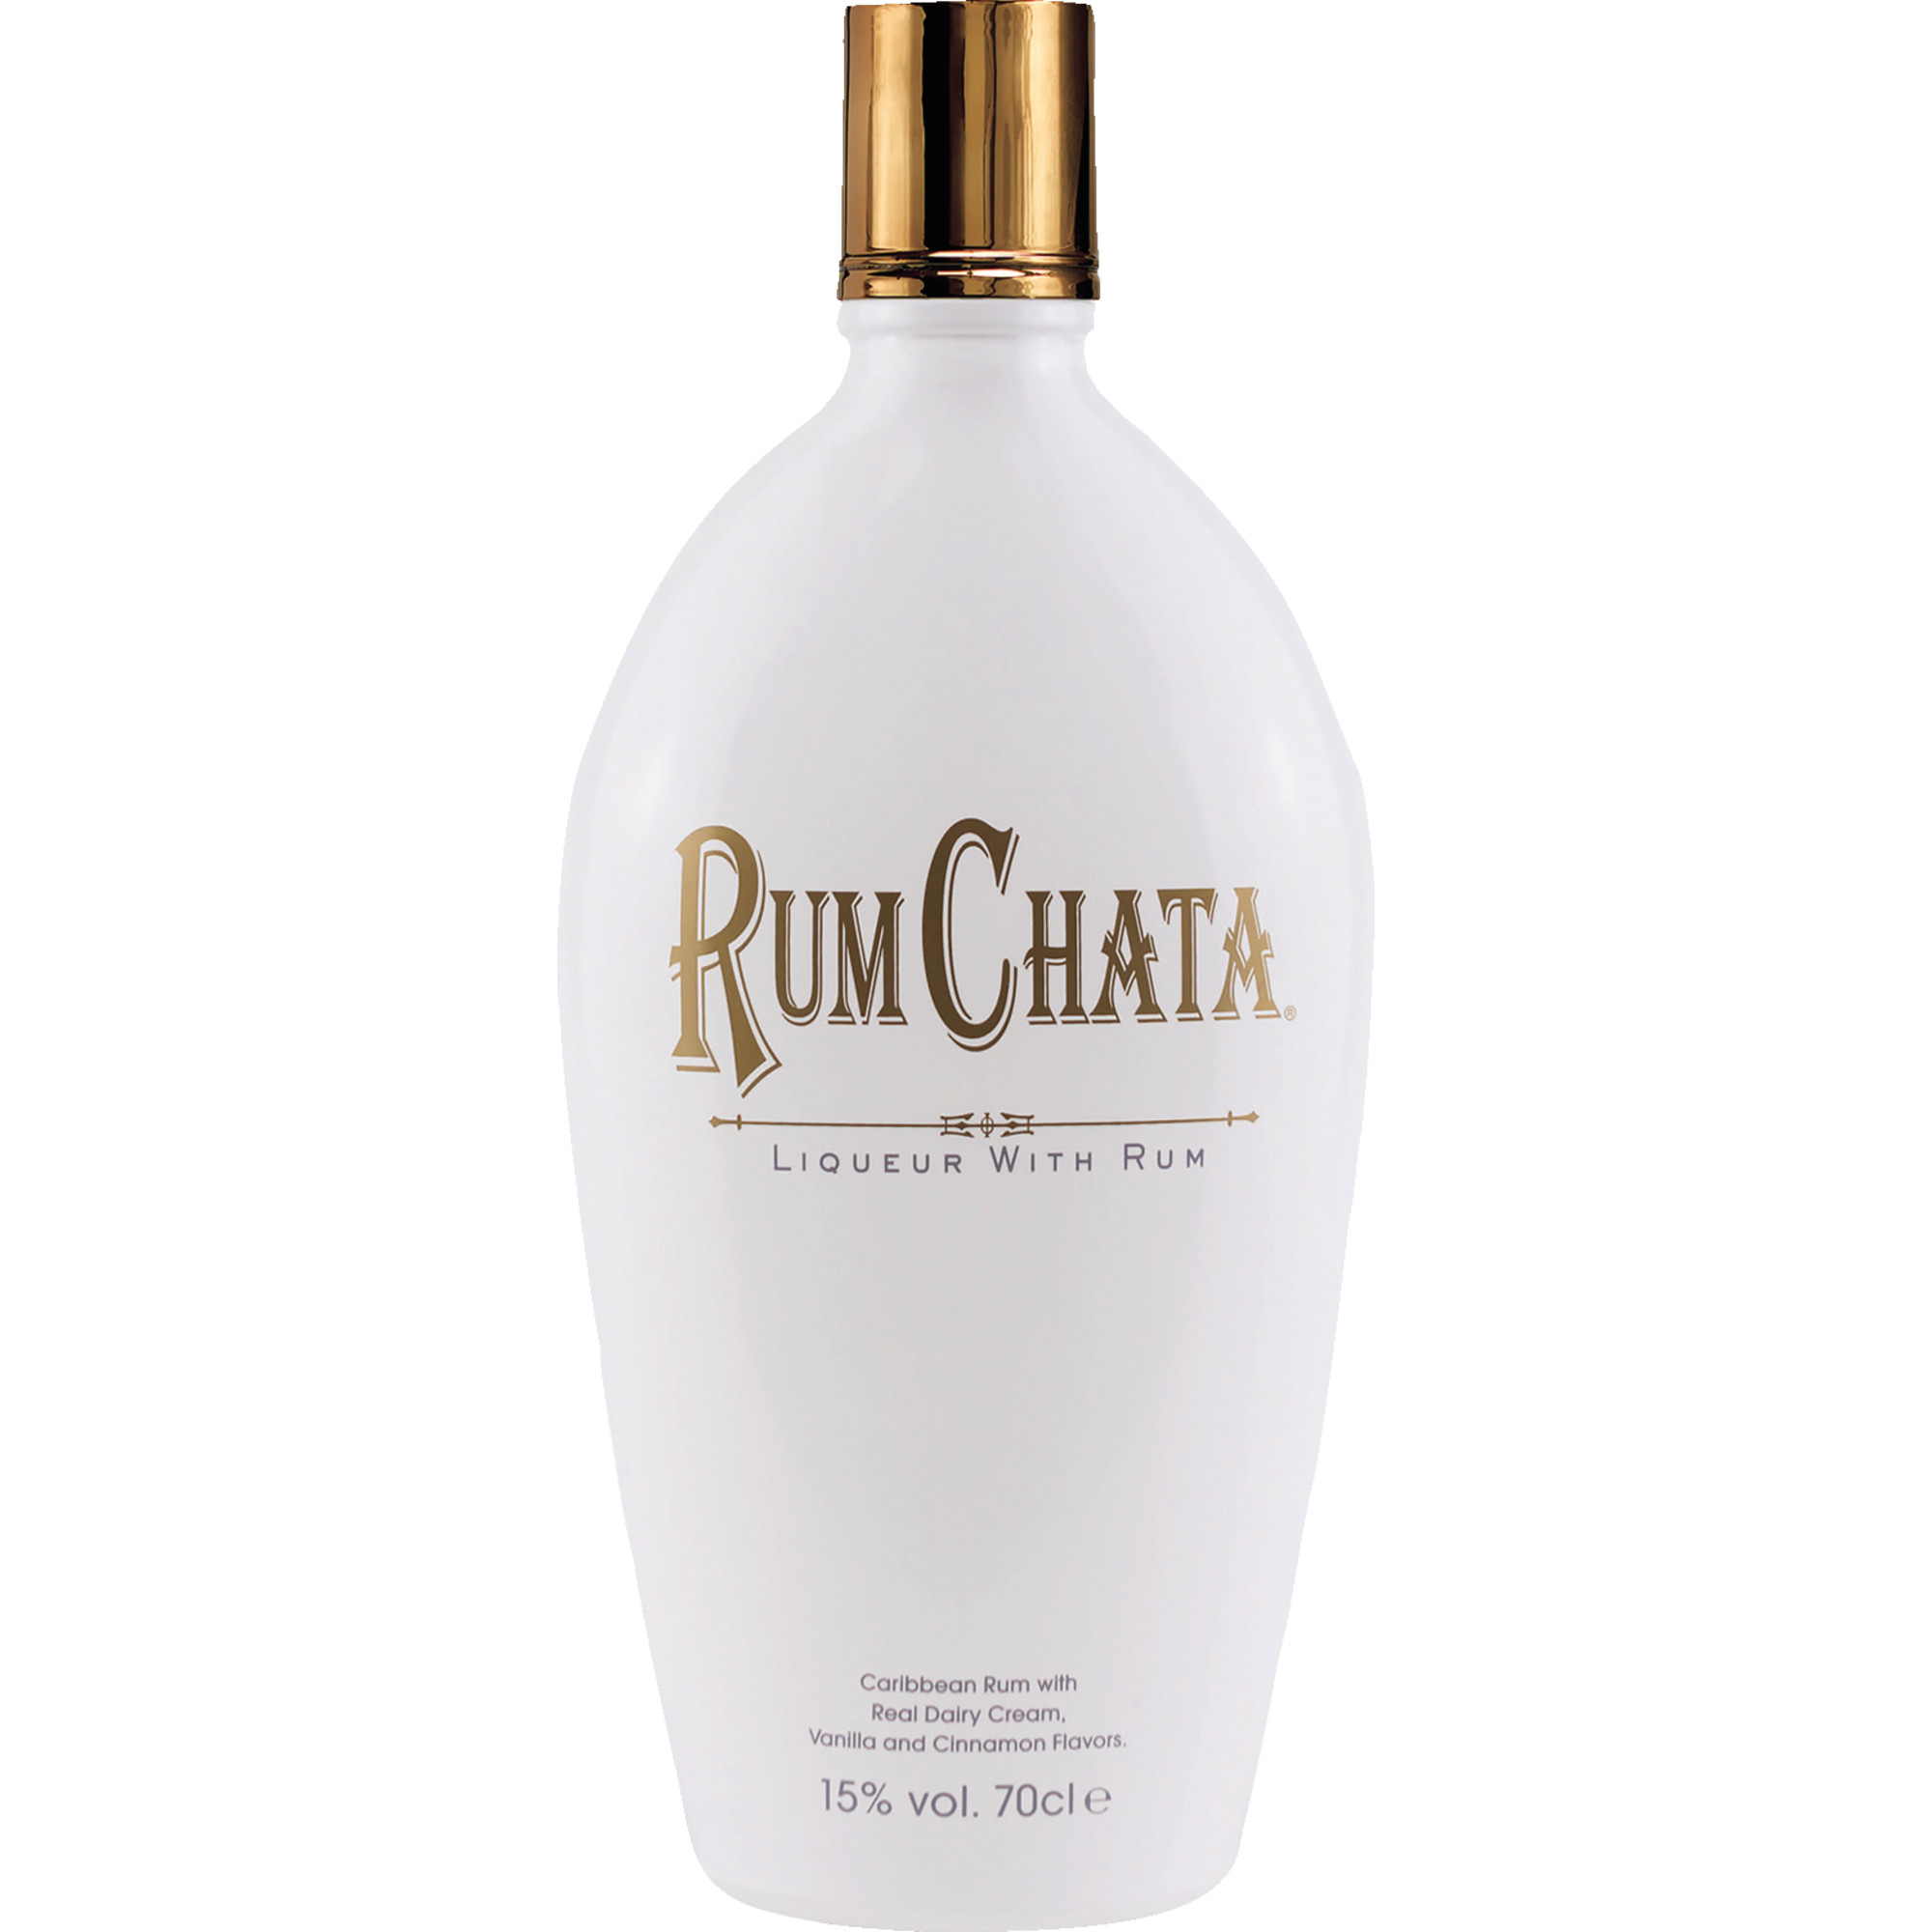 Rumchata Rum Cream Liqueur, 0,7L, 15% Vol., Spirituosen  Spirituosen Hawesko